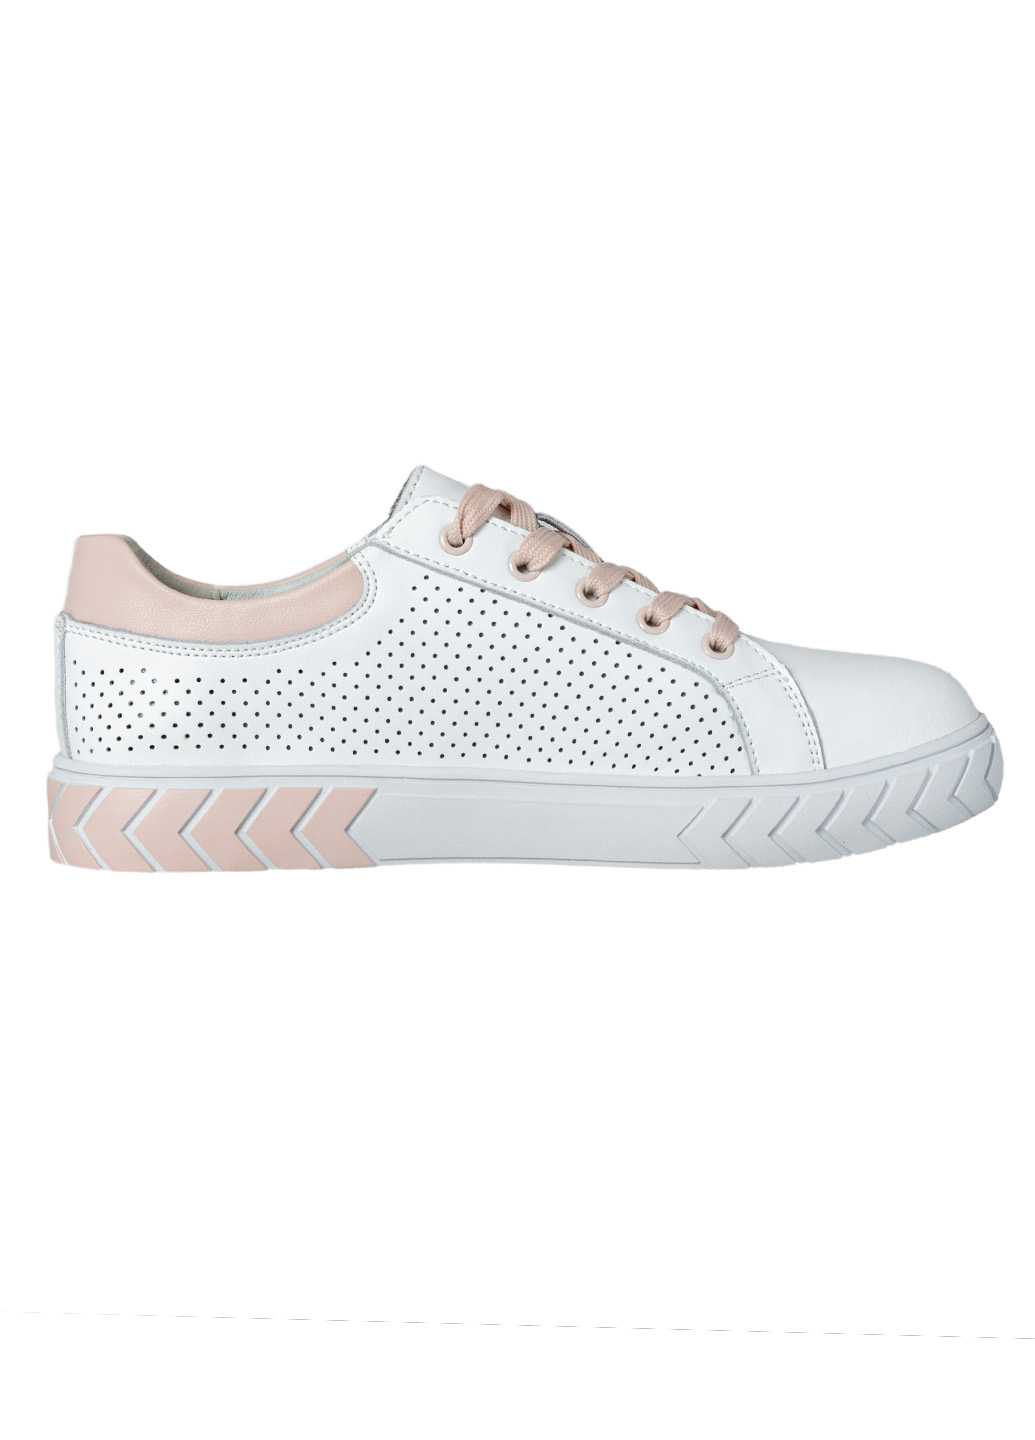 Жіночі кросівки Lifexpert натуральна шкіра білого кольору з перфорацією та рожевими вставками